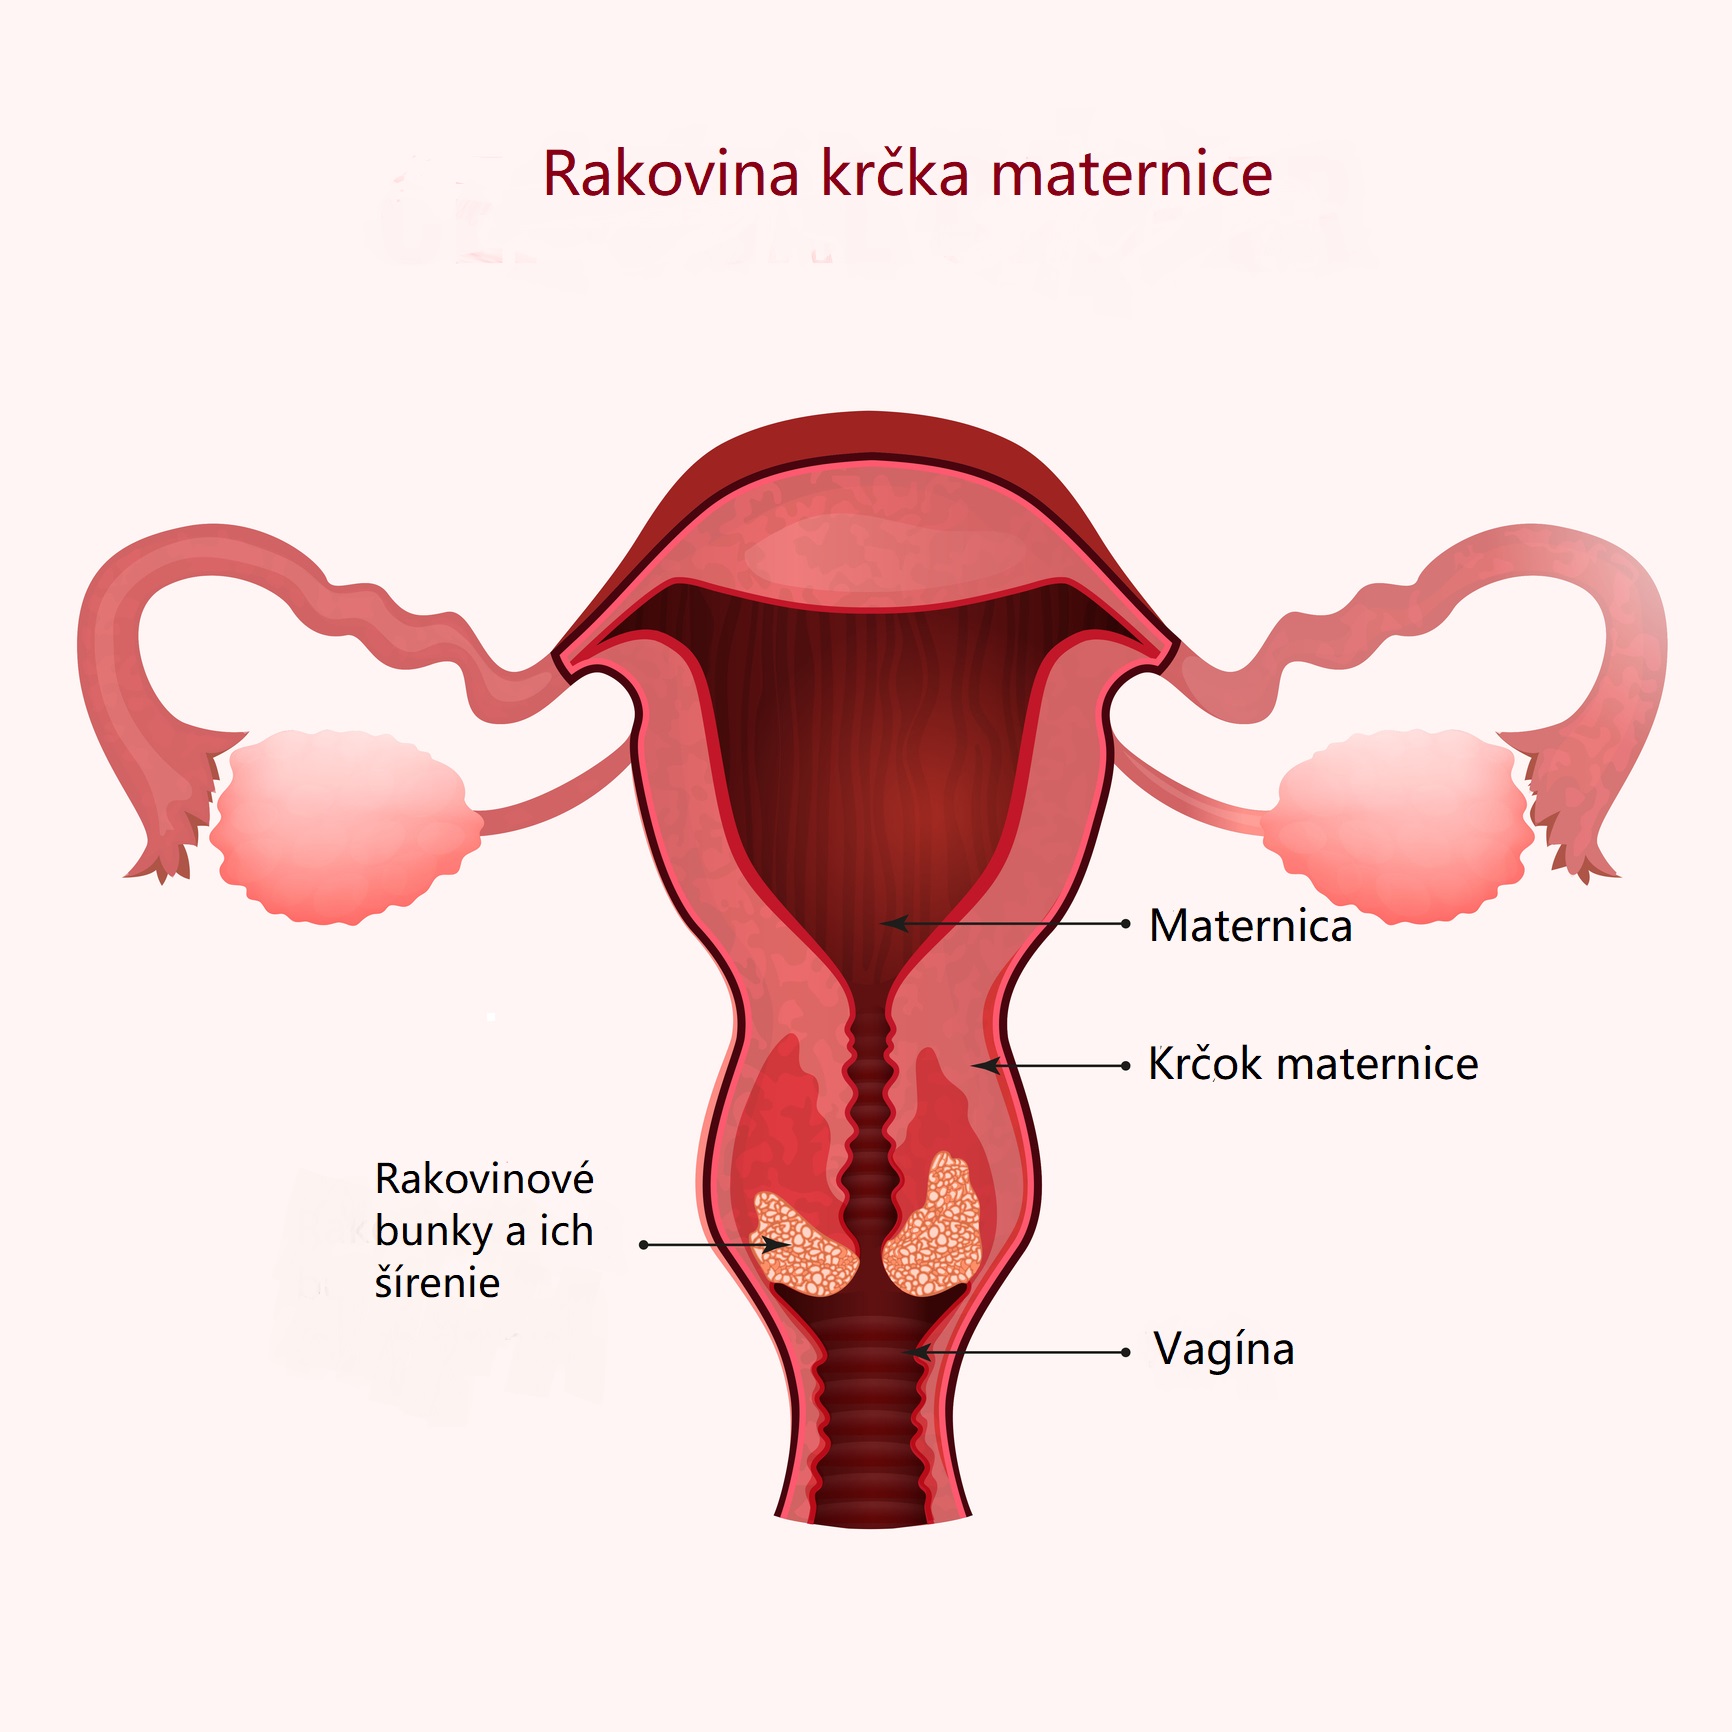 Rakovina krčka maternice a jej šírenie. Zdroj: Getty Images